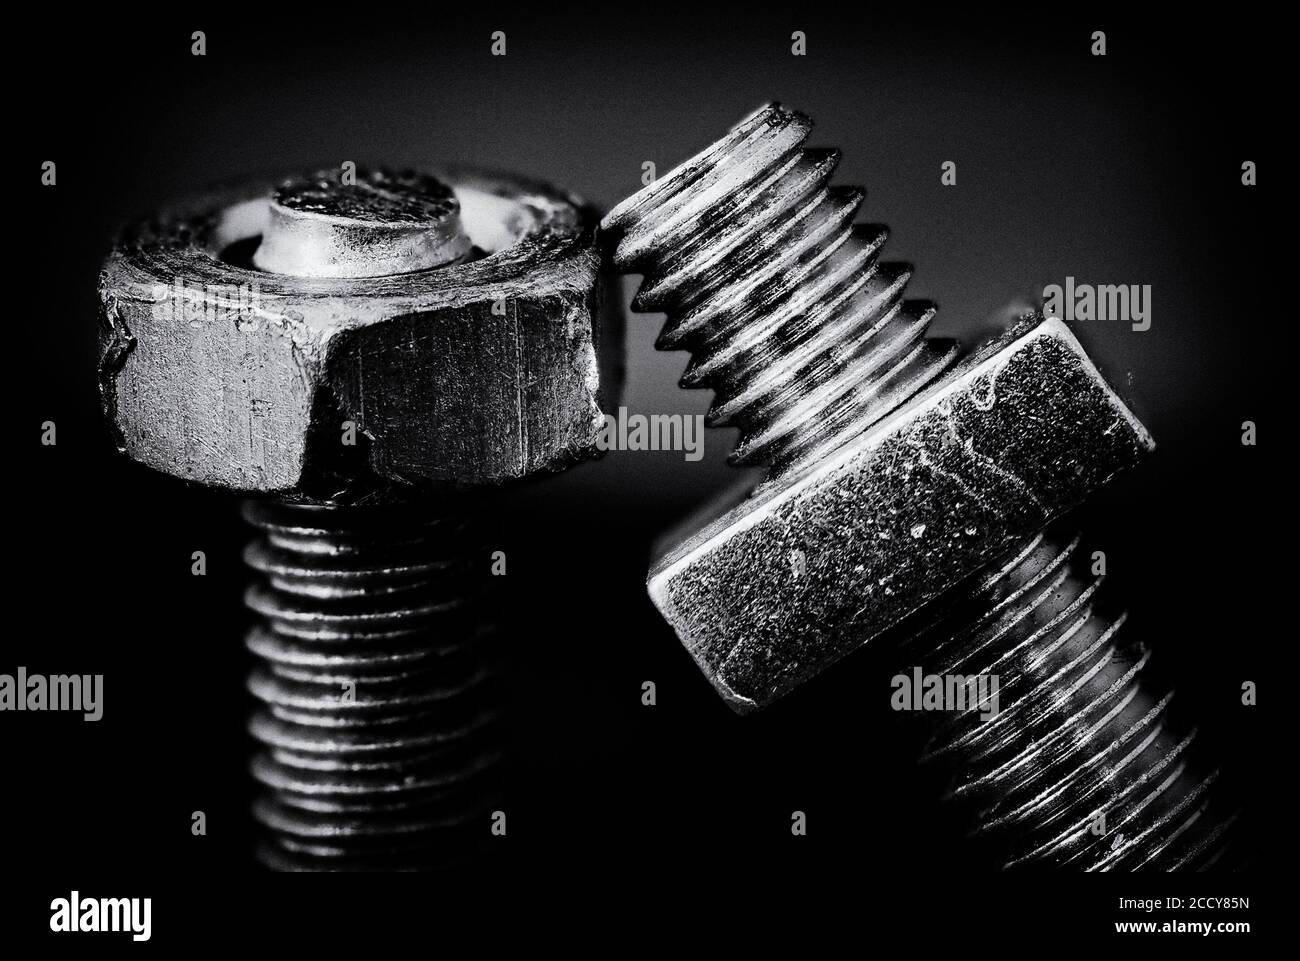 Una imagen monocroma de arte fino de dos tornillos mecanizados que se inclinan junto con tuercas hexagonales y cuadradas. Foto de stock